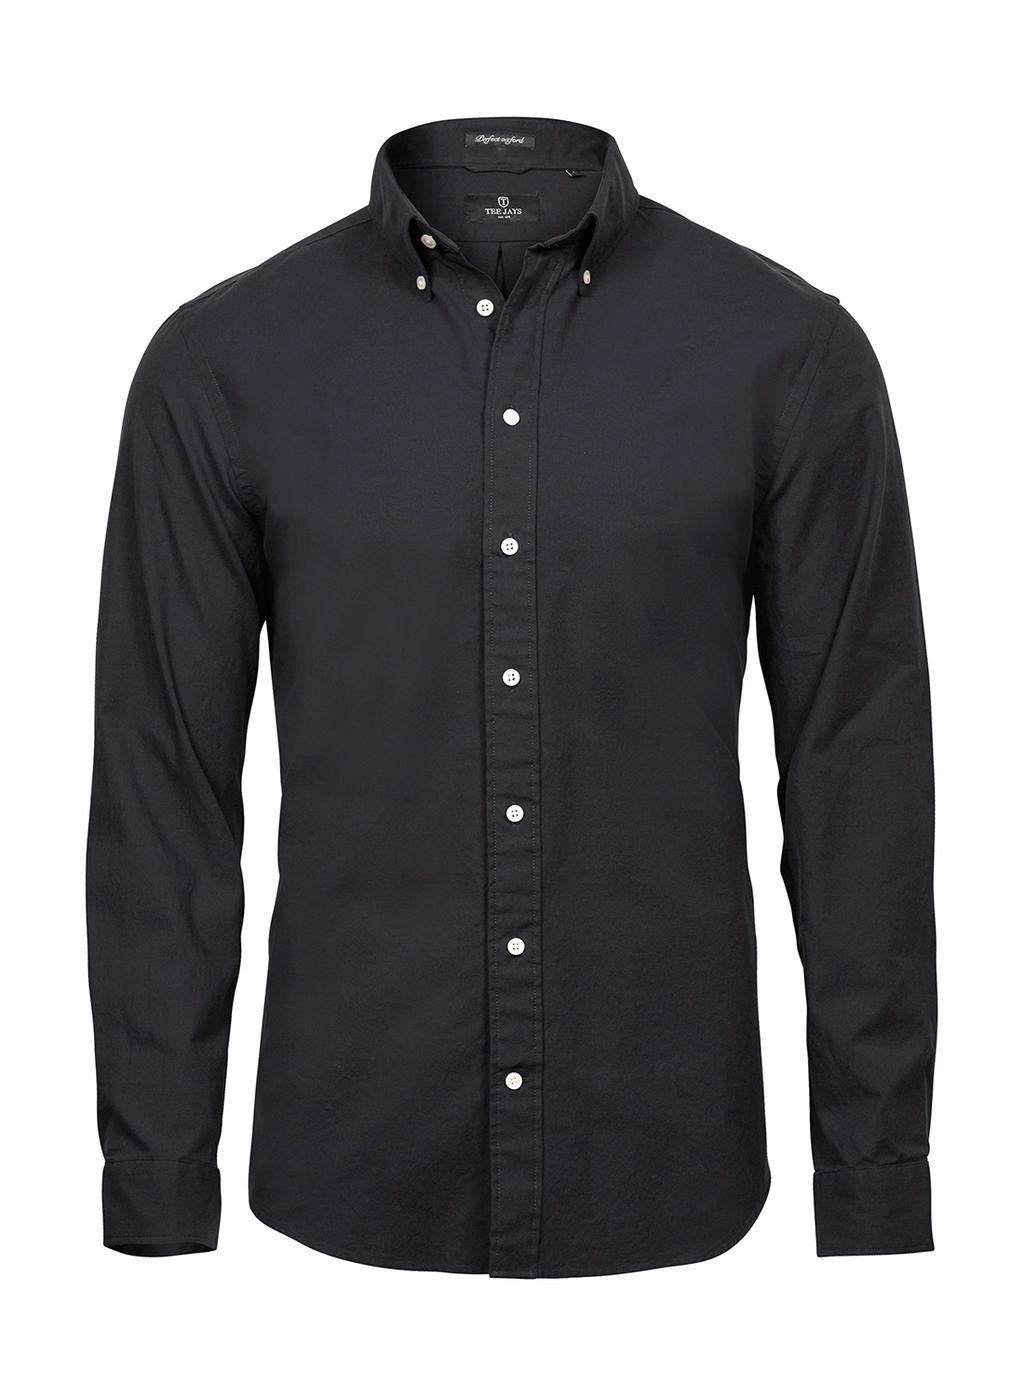 Perfect Oxford Shirt zum Besticken und Bedrucken in der Farbe Black mit Ihren Logo, Schriftzug oder Motiv.